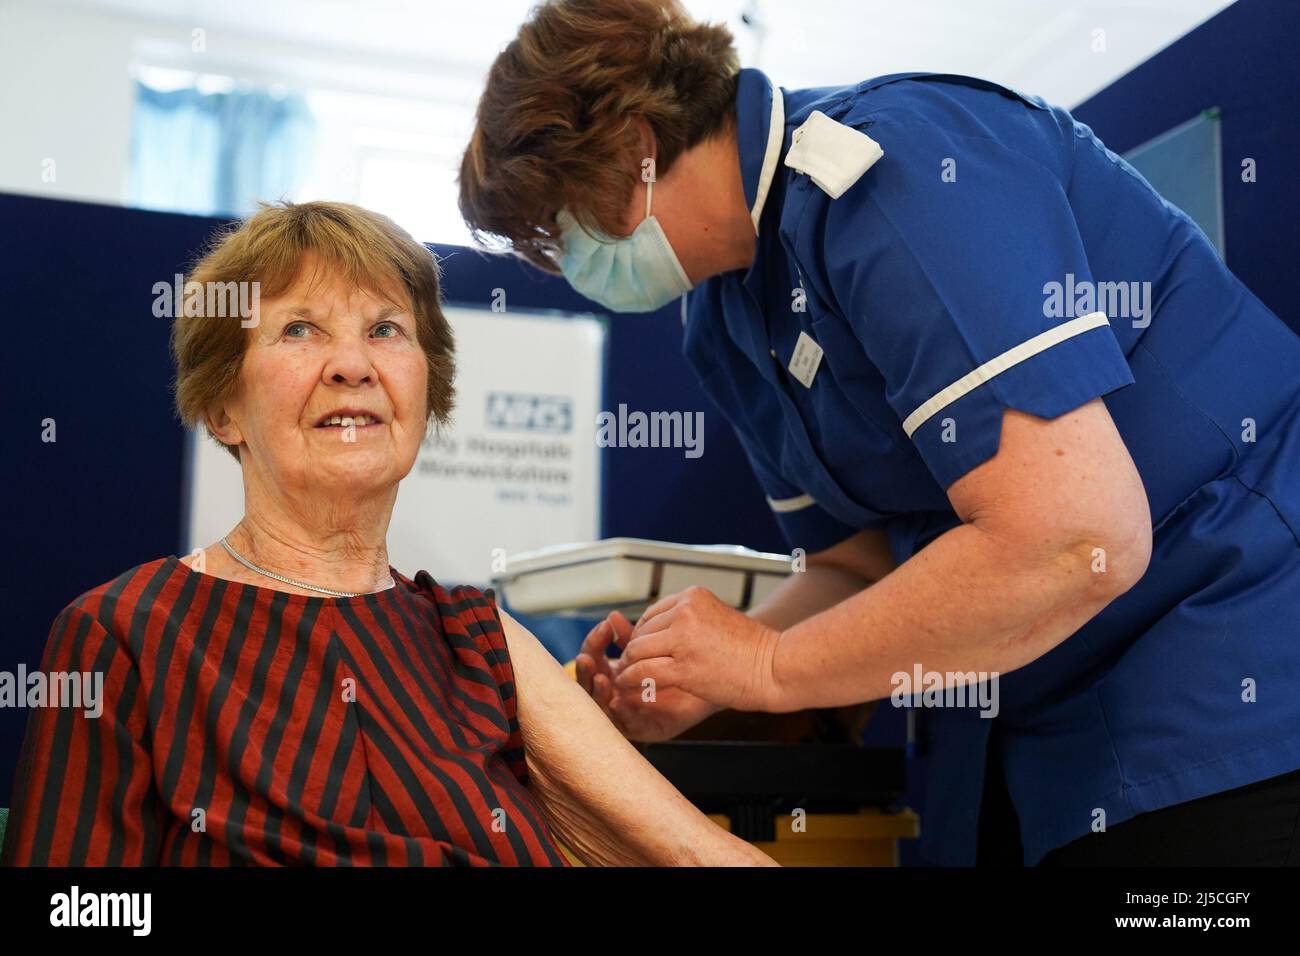 RETRANSMISE CORRIGEANT L'ÂGE DE 91 À 92 Margaret Keenan, 92 ans, reçoit son coup de rappel de printemps Covid-19 à l'hôpital universitaire de Coventry. Mme Keenan, connue sous le nom de Maggie, a été la première patiente du Royaume-Uni à recevoir le vaccin Pfizer/BioNtech Covid-19. Date de la photo: Vendredi 22 avril 2022. Banque D'Images